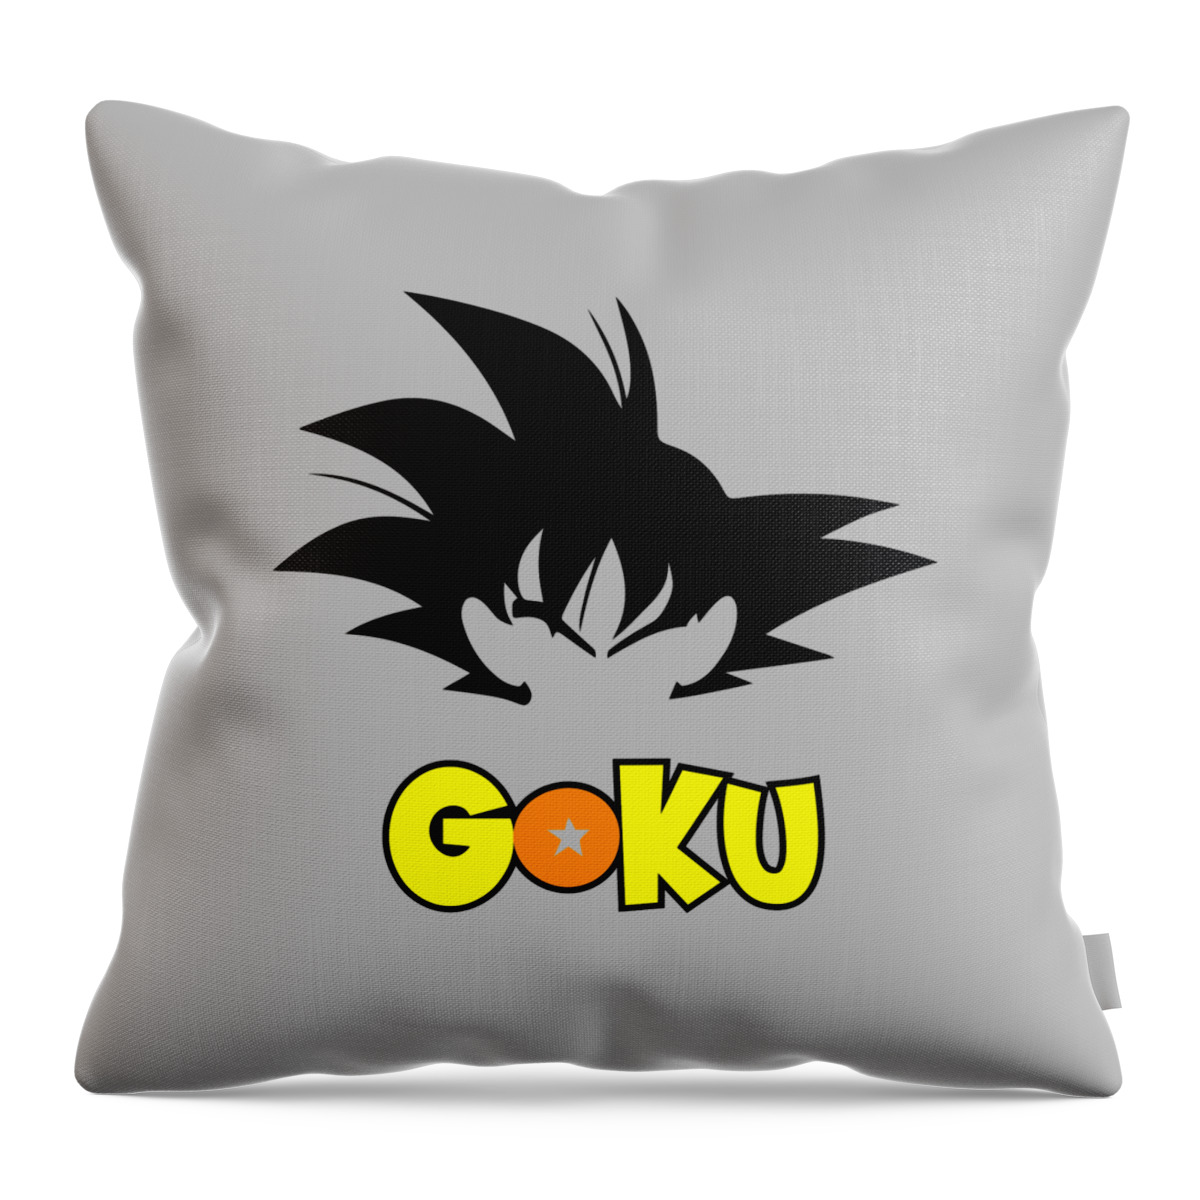 goku hypebeast - Dragonballz Hypebeast - Pillow